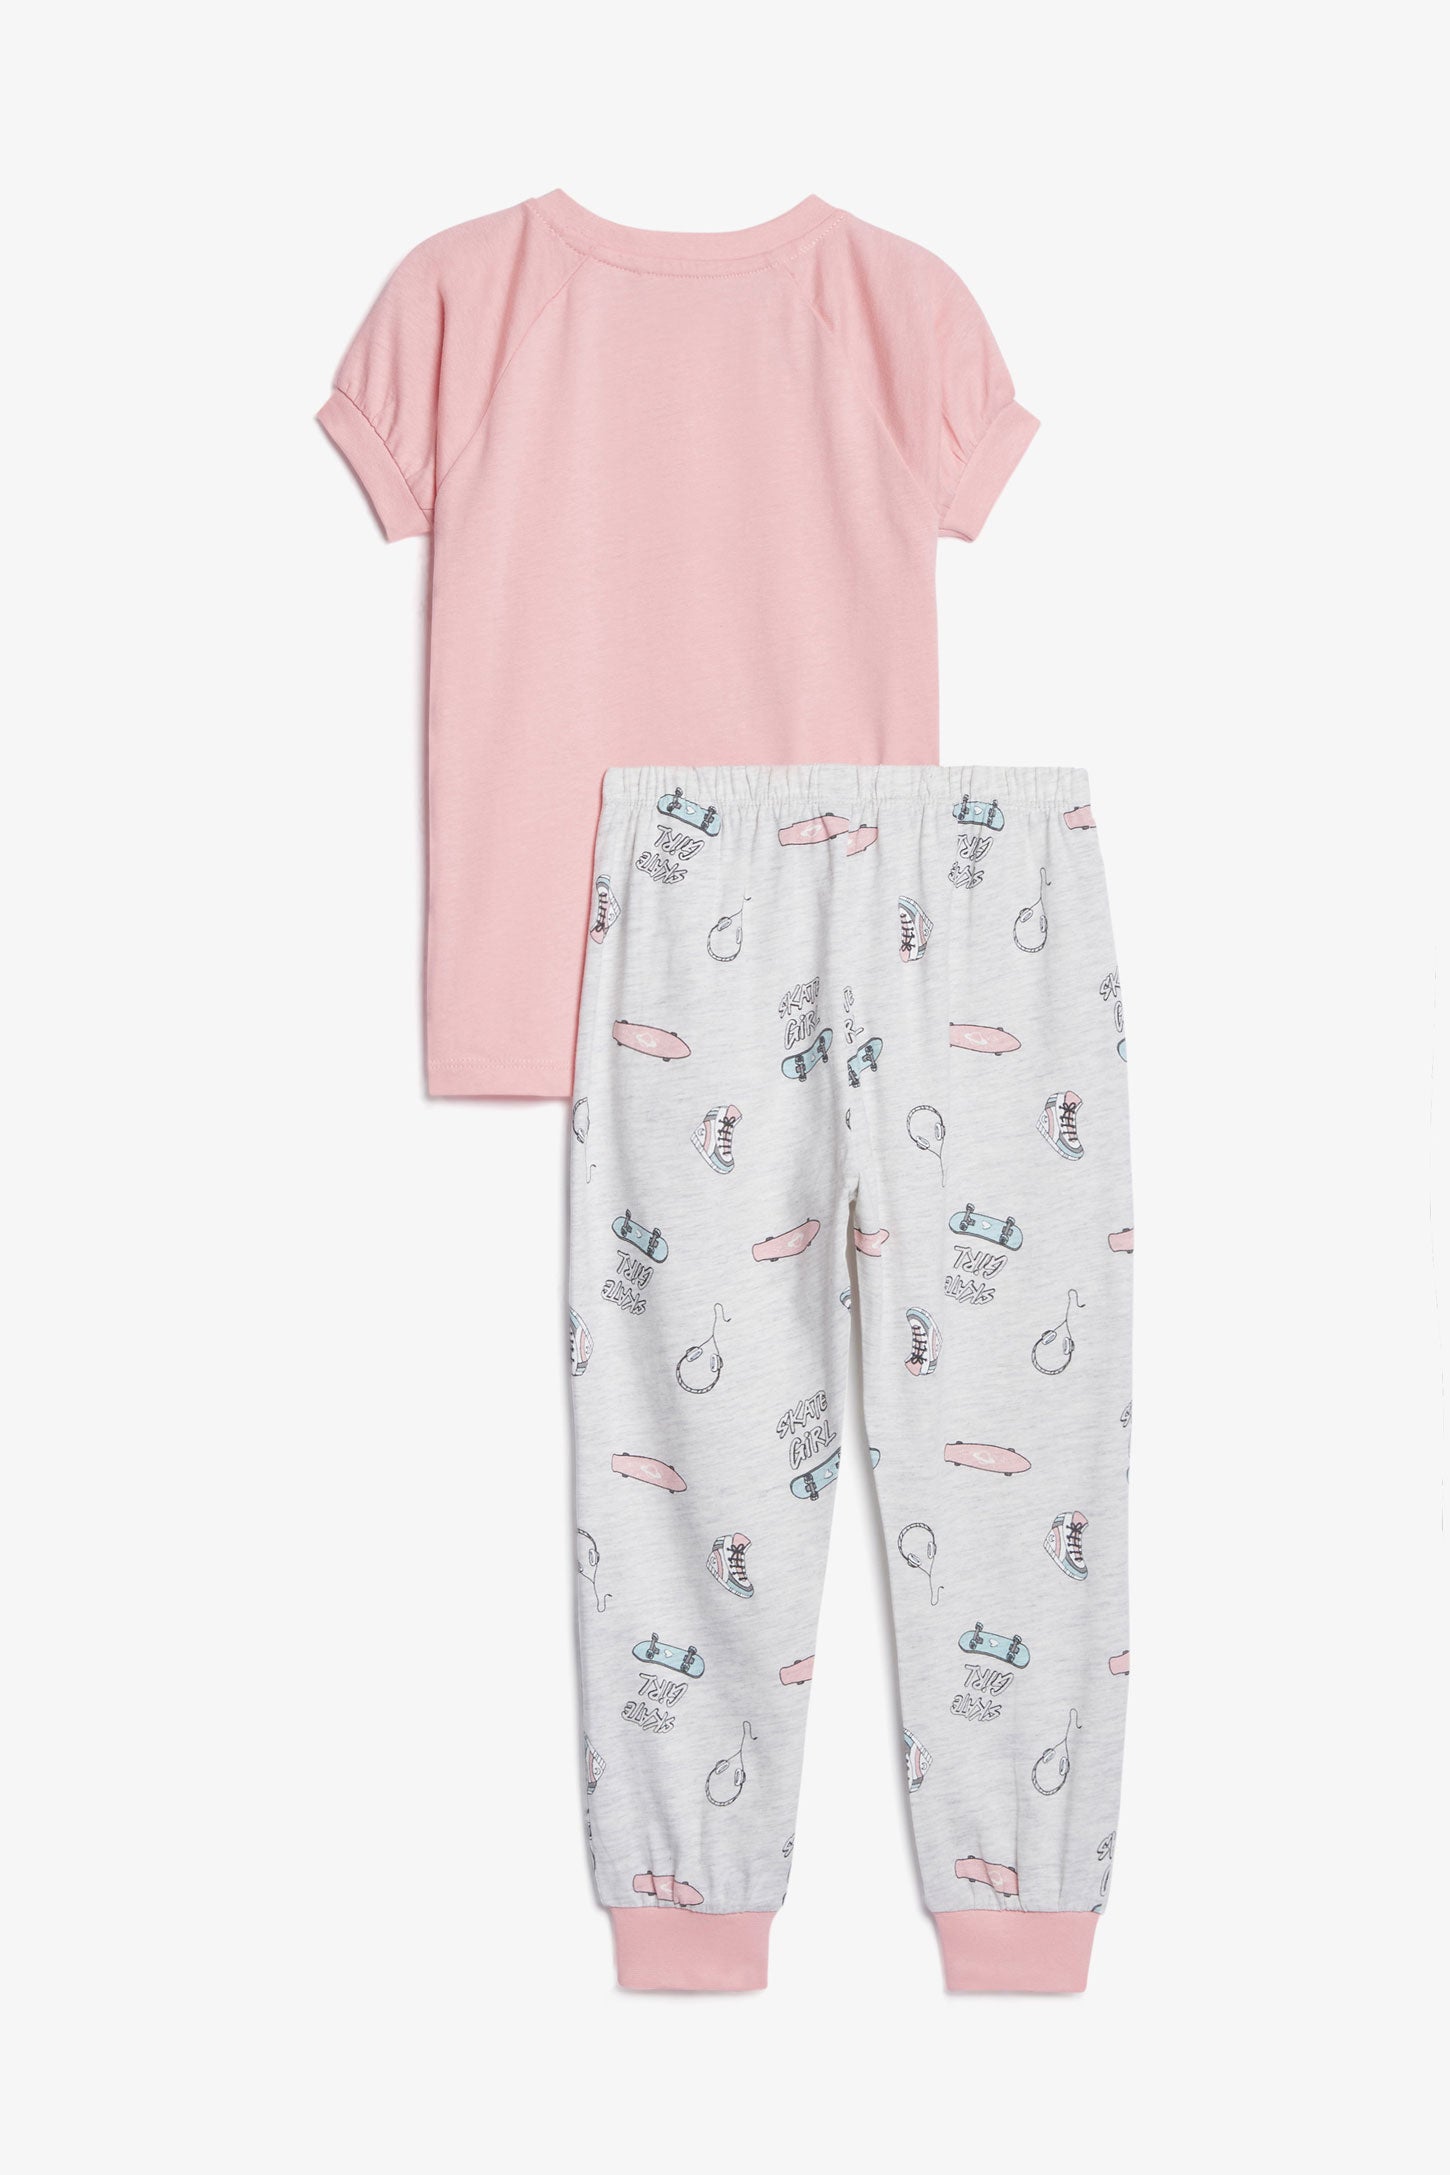 Pyjama 2-pièces en coton, 2/35$ - Enfant fille && ROSE